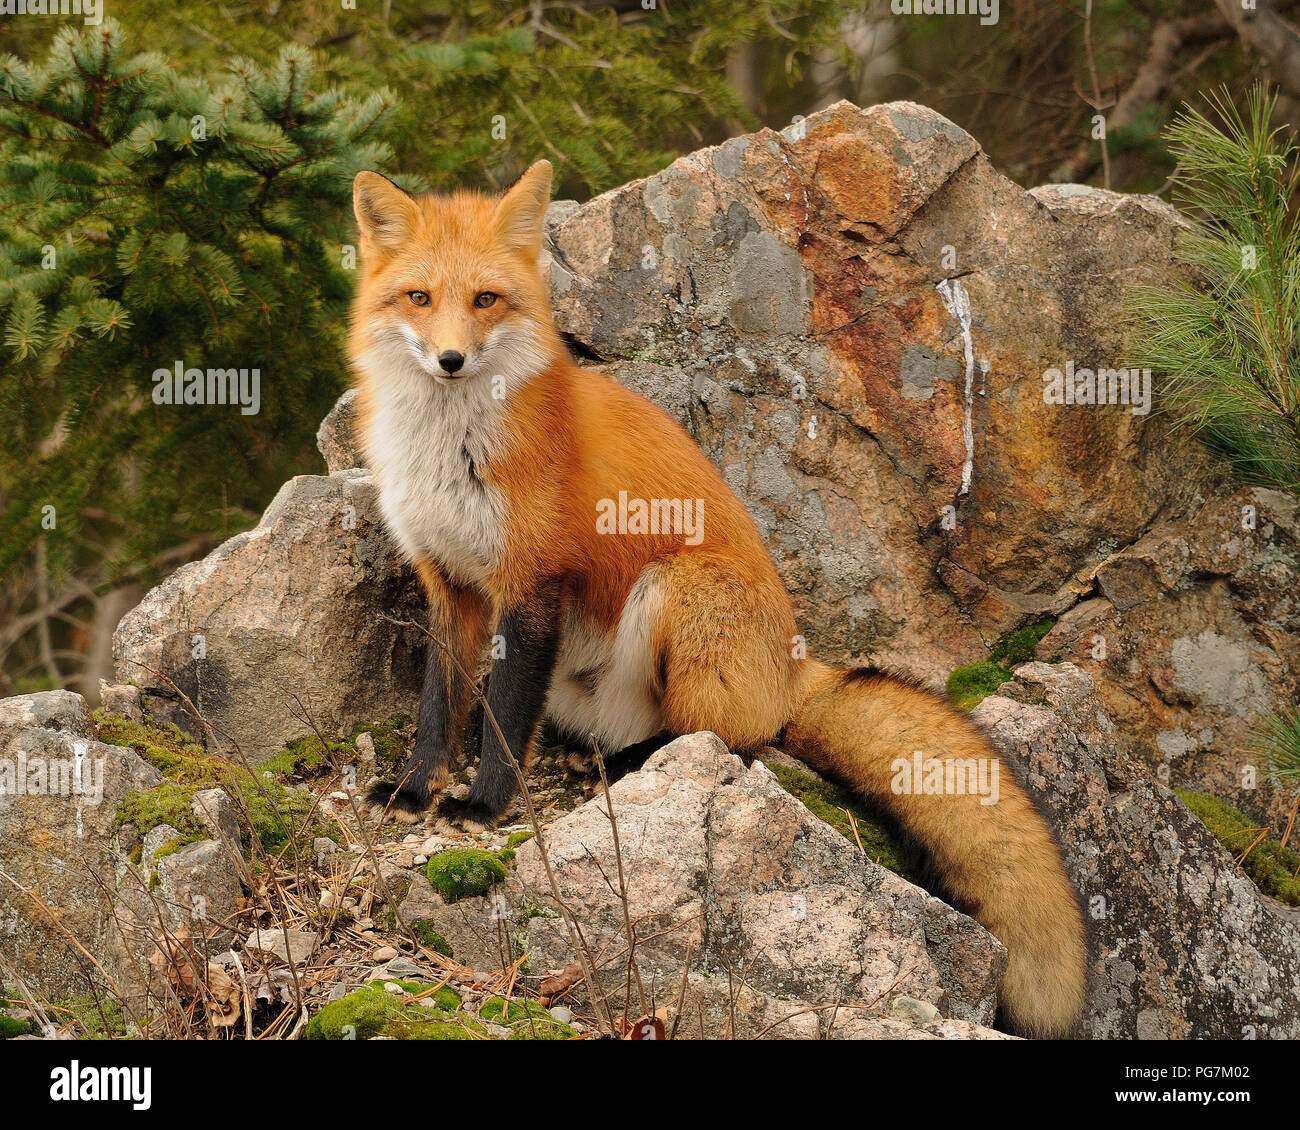 Fox Red fox Tier sitzt auf einem Felsen im Wald mit Pinien Hintergrund in seiner Umgebung und Umwelt. Stockfoto